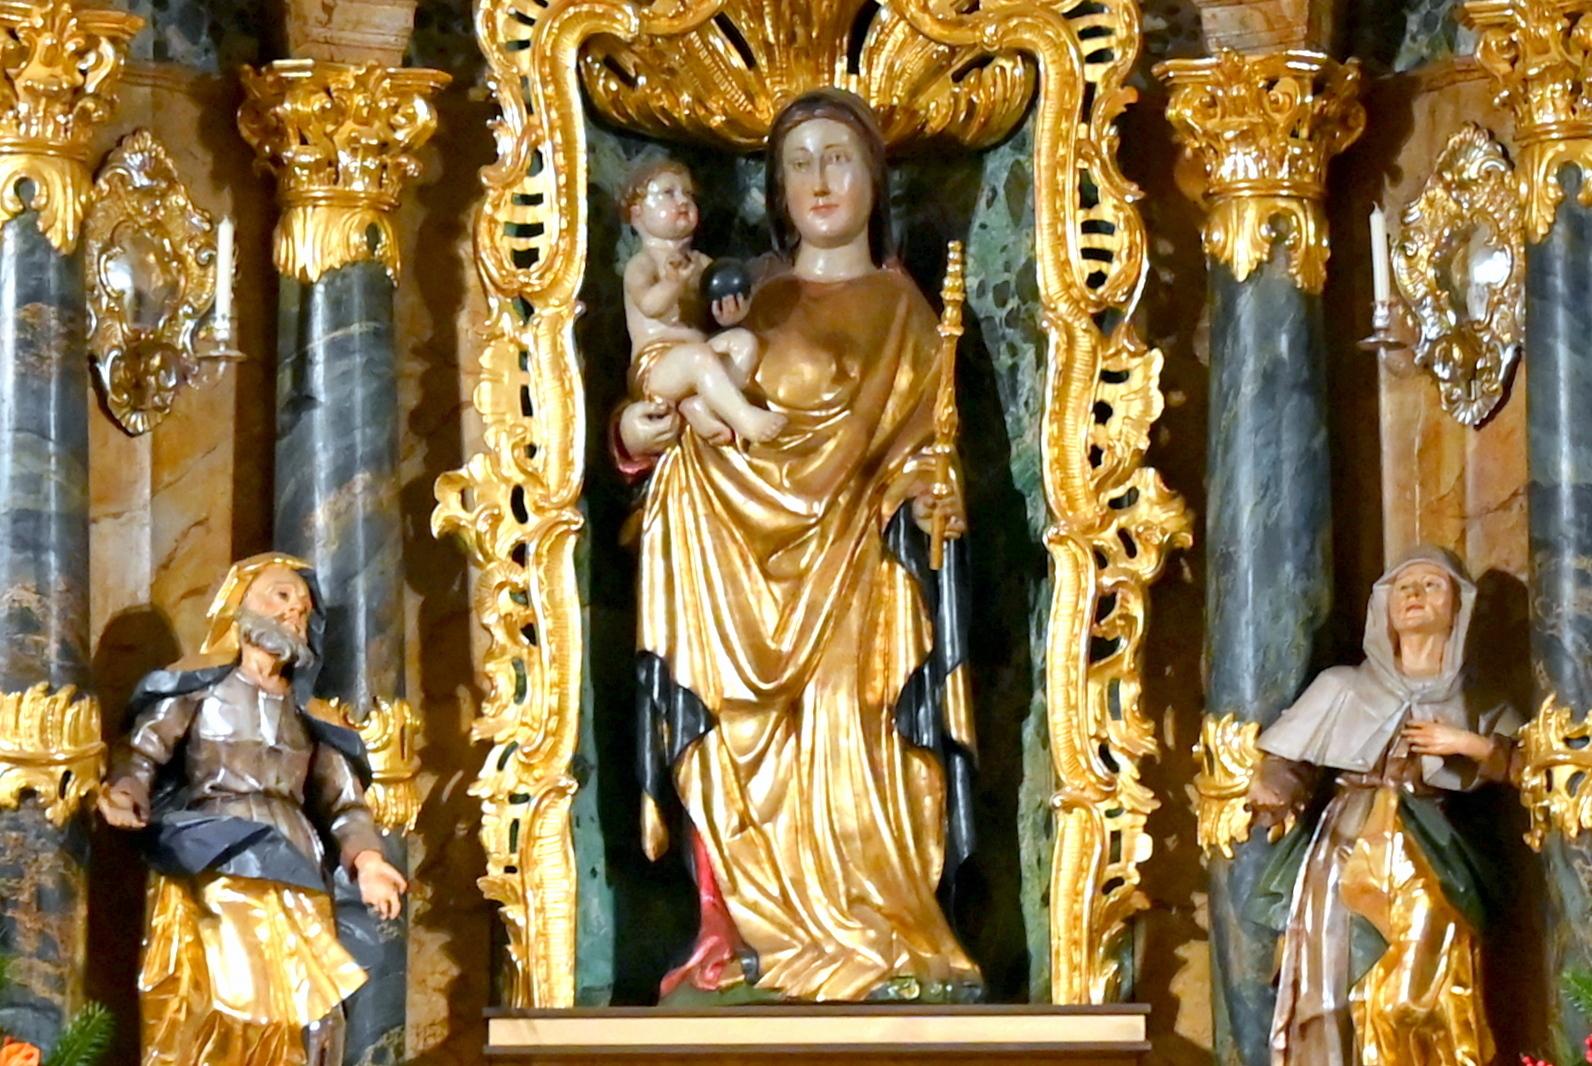 Maria mit Kind, Tegernheim, Pfarrkirche Mariä Verkündigung, 1. Drittel 15. Jhd.